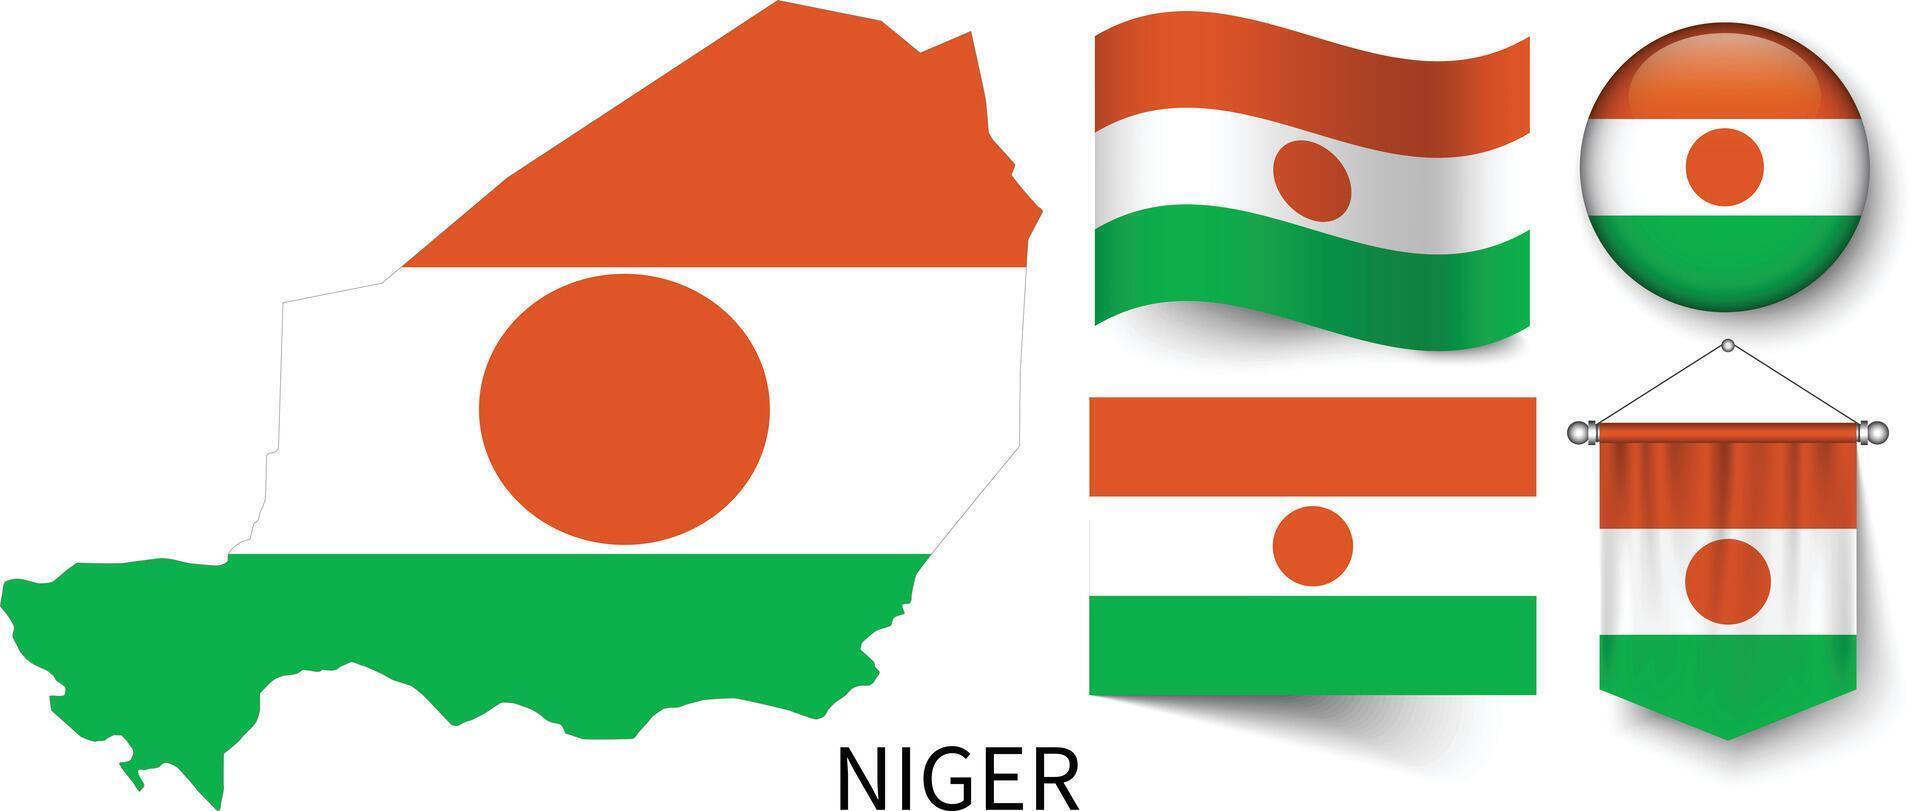 il vario modelli di il Niger nazionale bandiere e il carta geografica di quello del Niger frontiere vettore